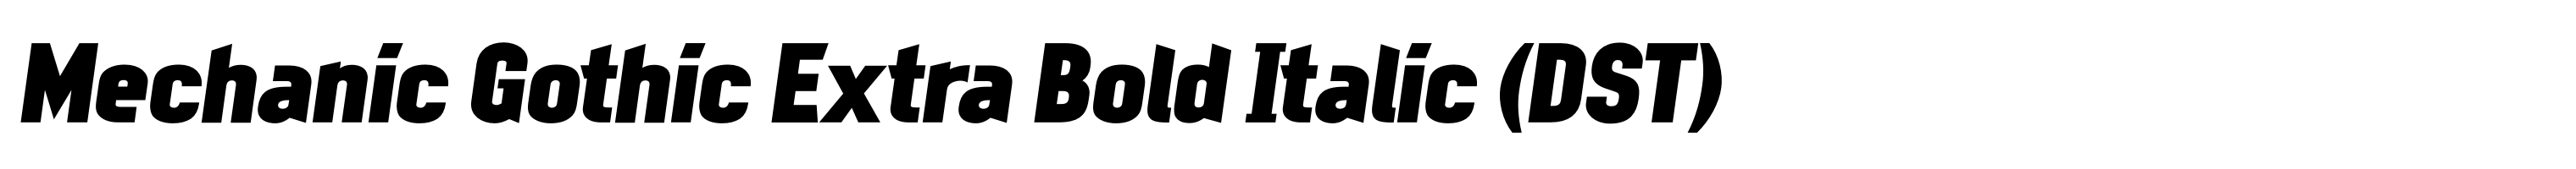 Mechanic Gothic Extra Bold Italic (DST)